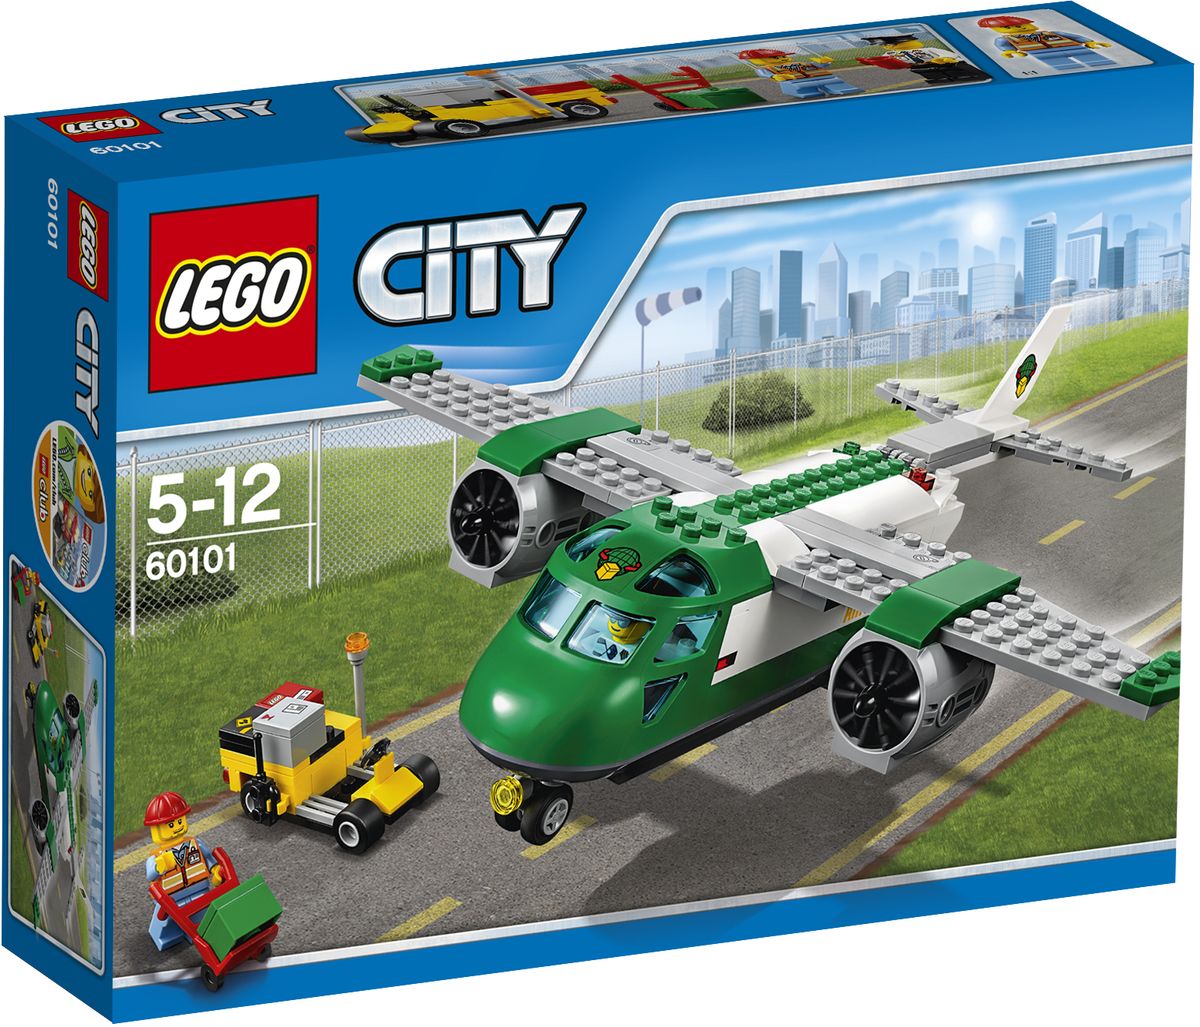 LEGO City Конструктор Грузовой самолет 60101